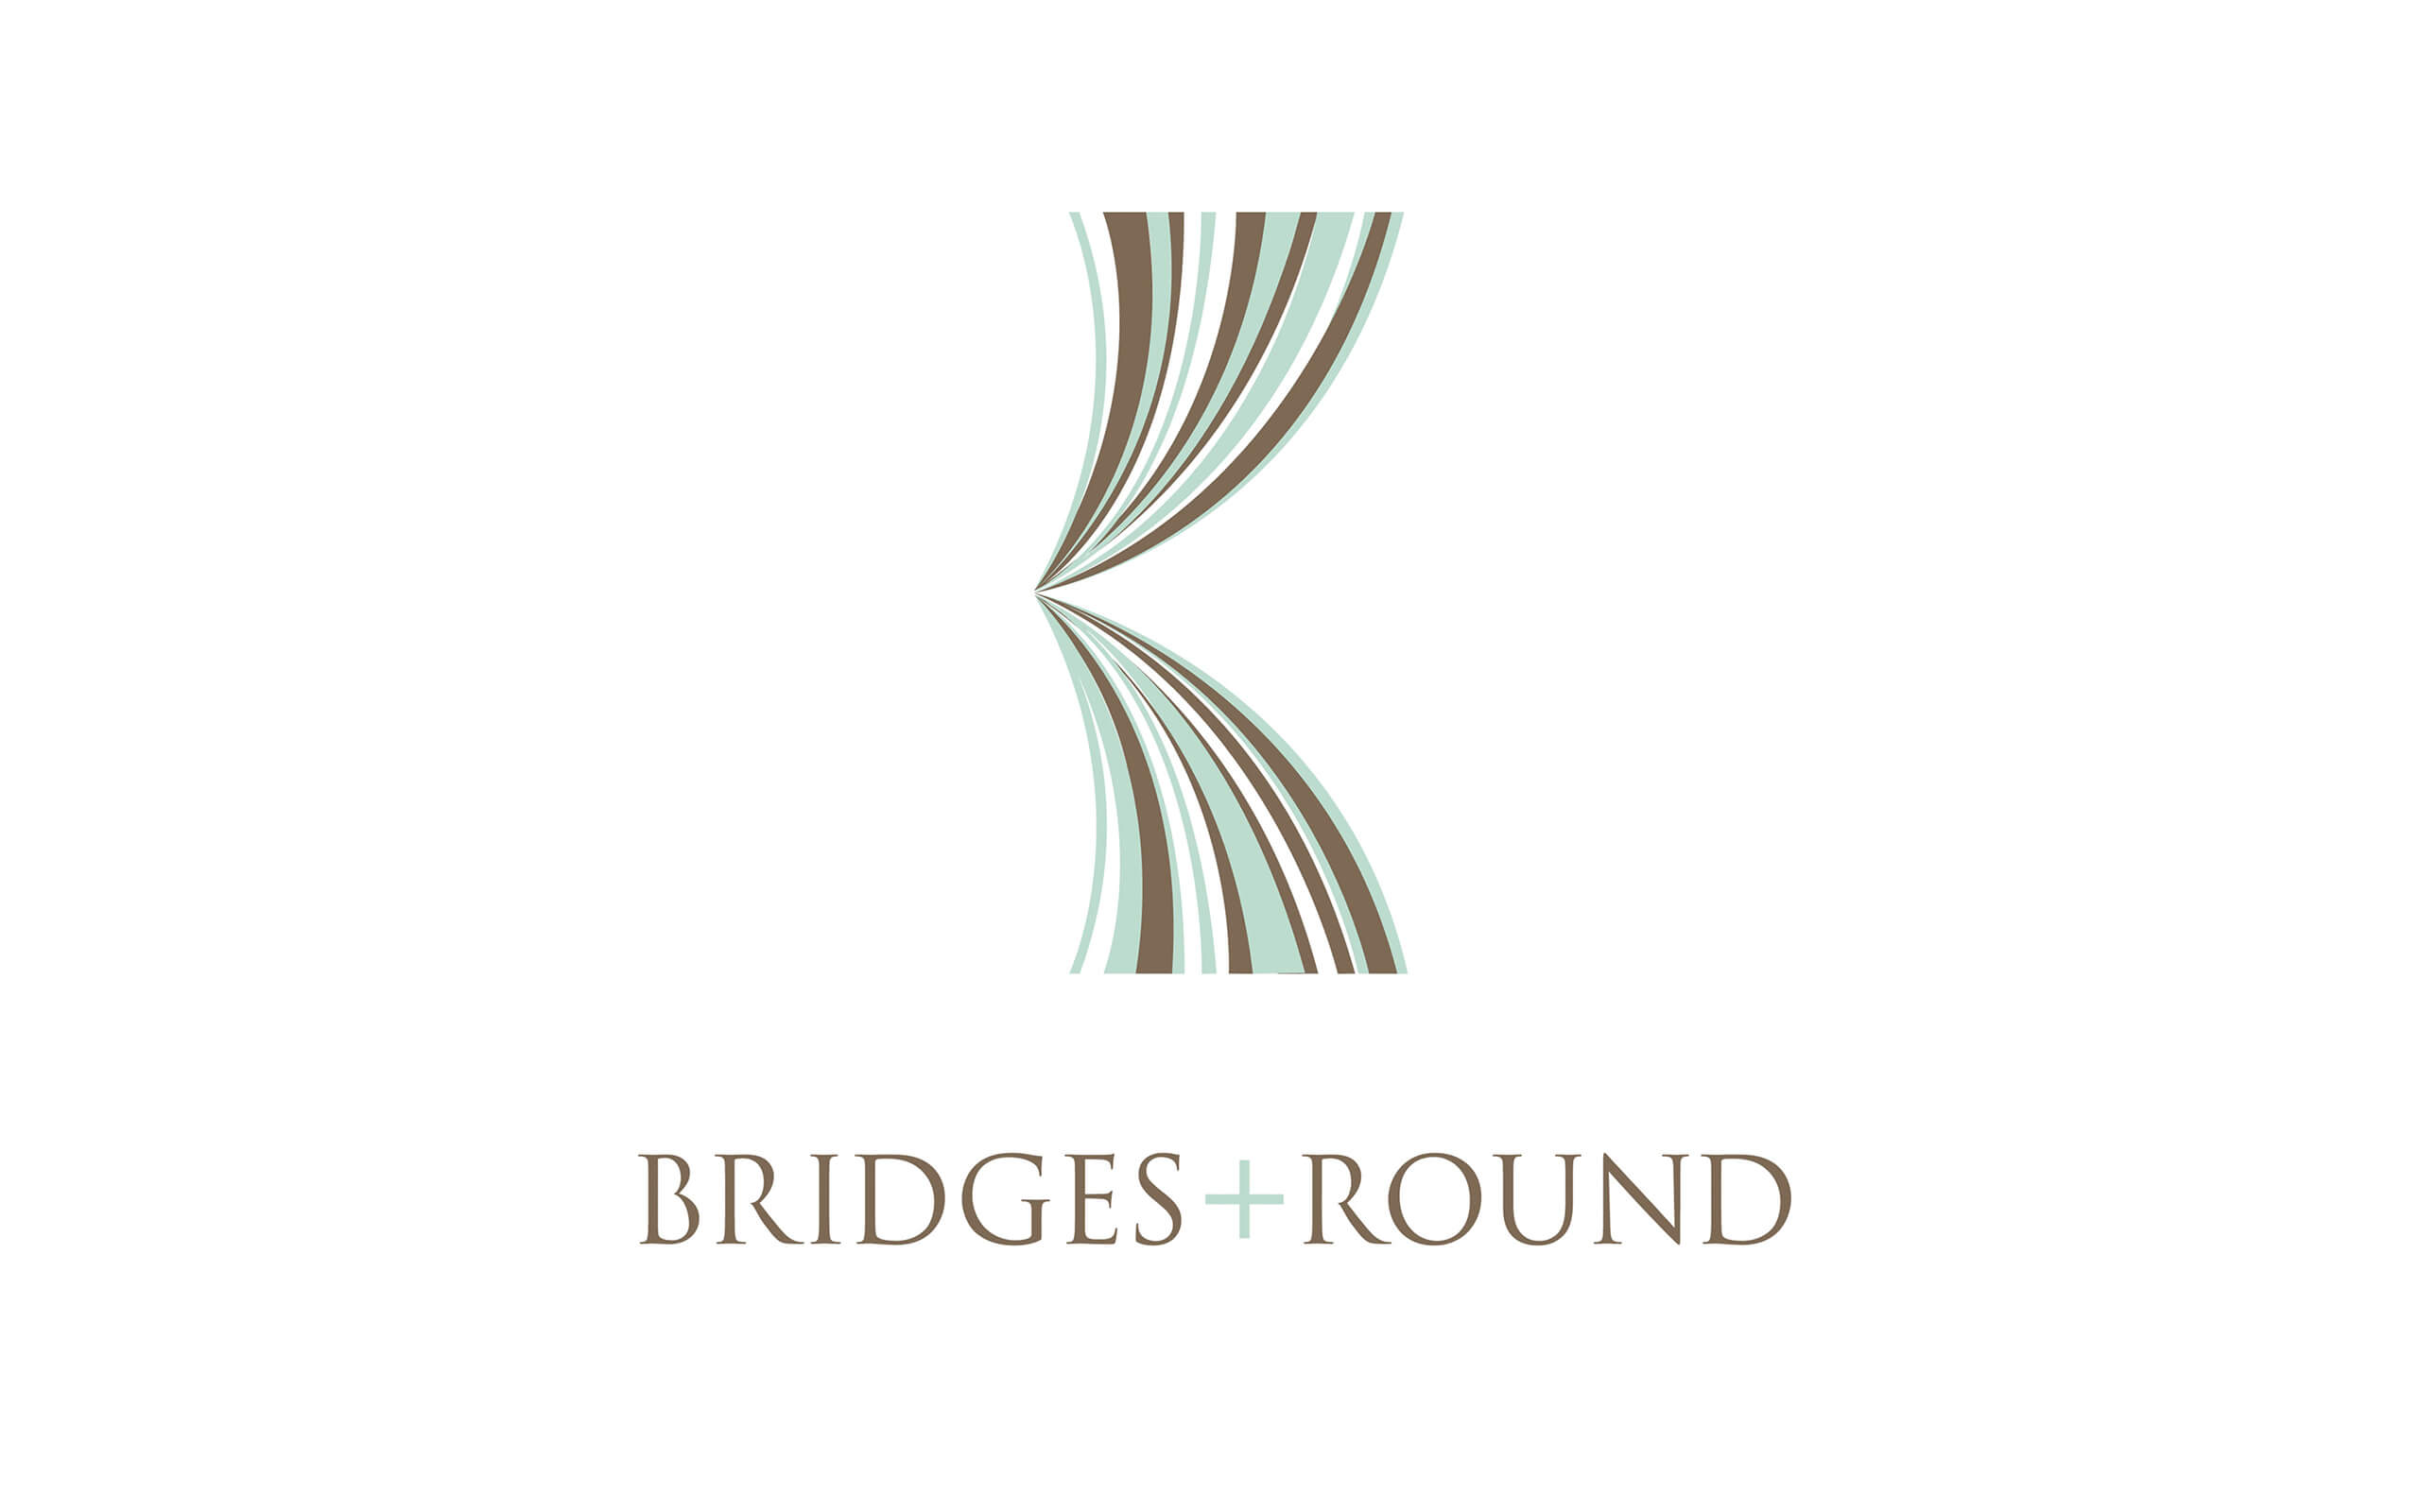 Bridges and round curtains logo